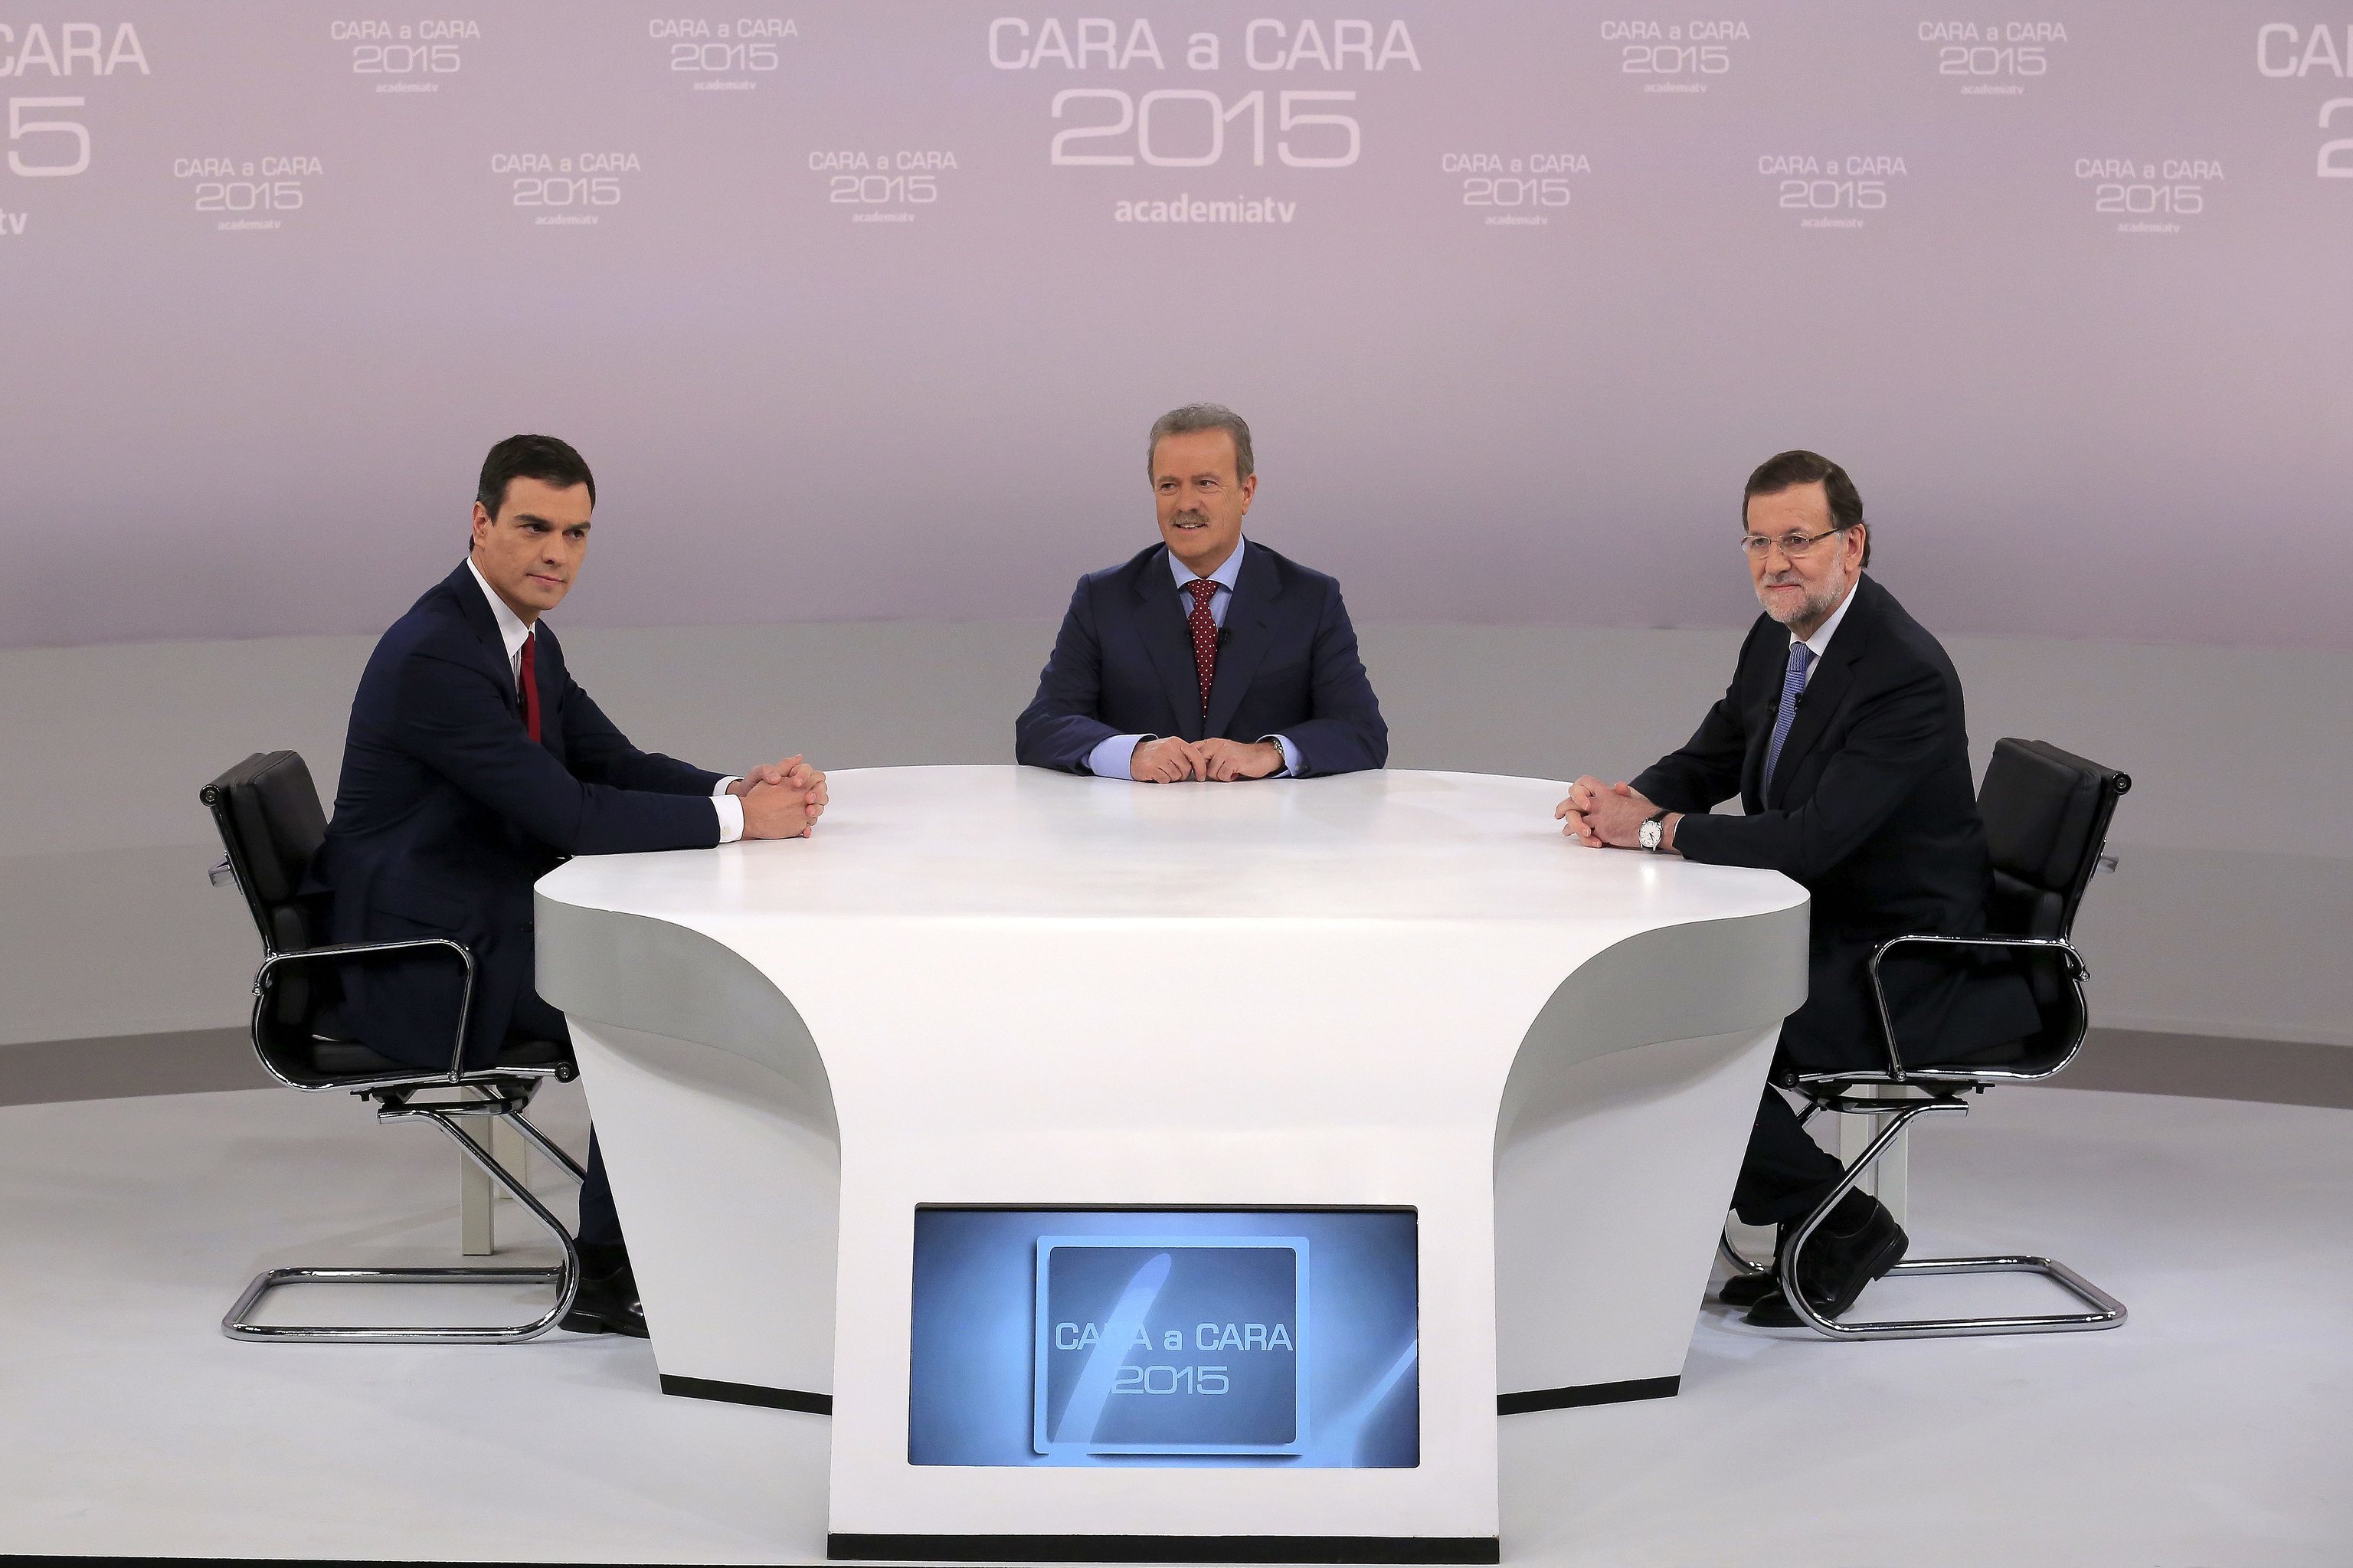 Pedro Snchez y Mariano Rajoy, junto al moderador, en el cara a cara de 2015.